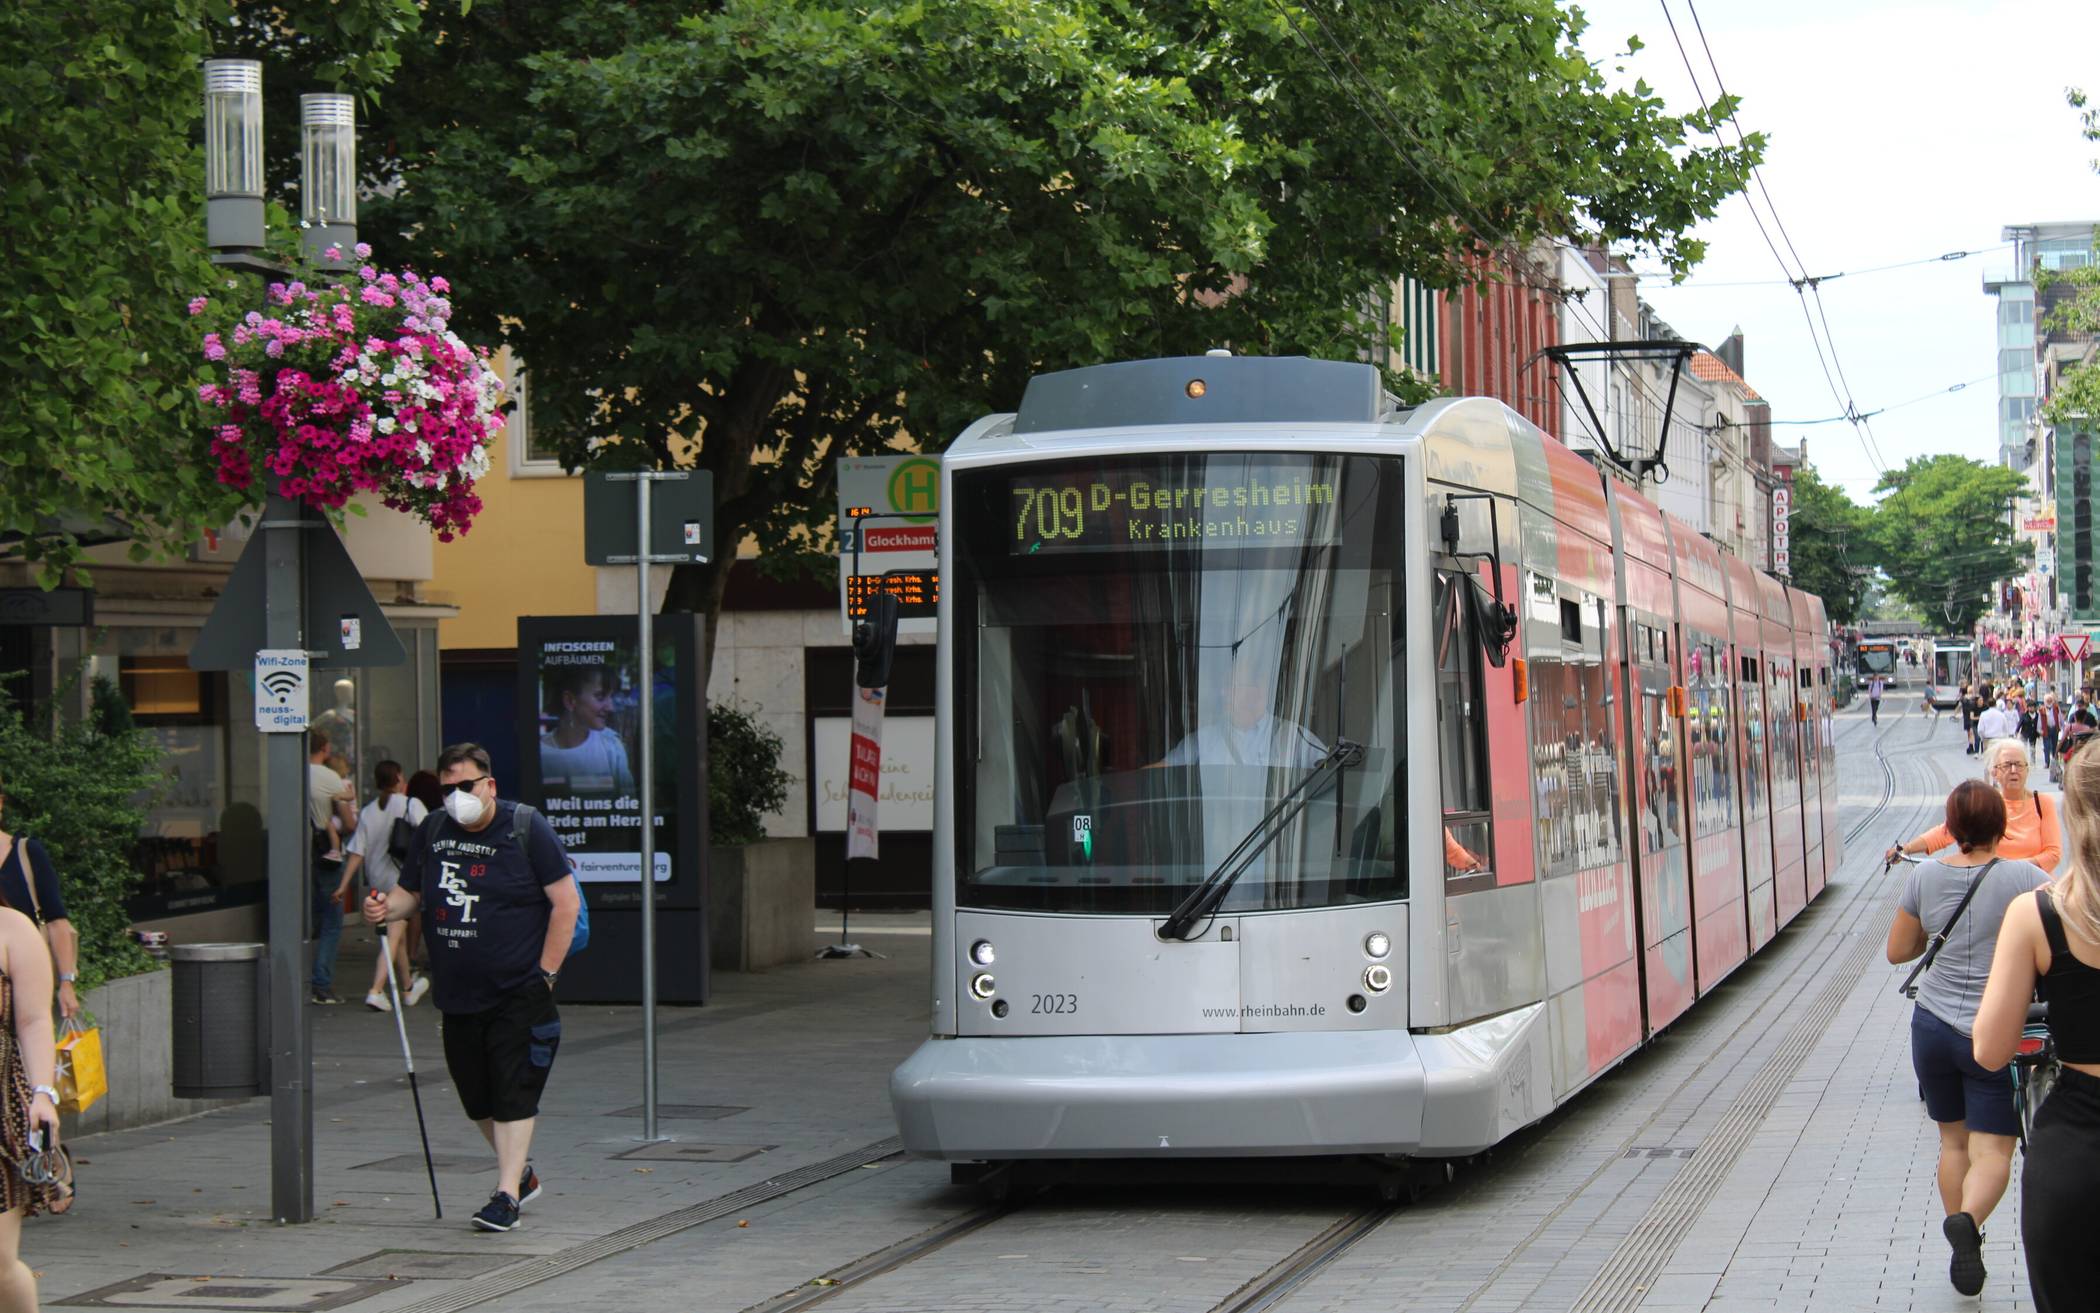 Die kostenfreie Nutzung der Straßenbahn in der City wird verlängert. Grund sind Ausfallzeiten der Bahn wegen Bauarbeiten.  